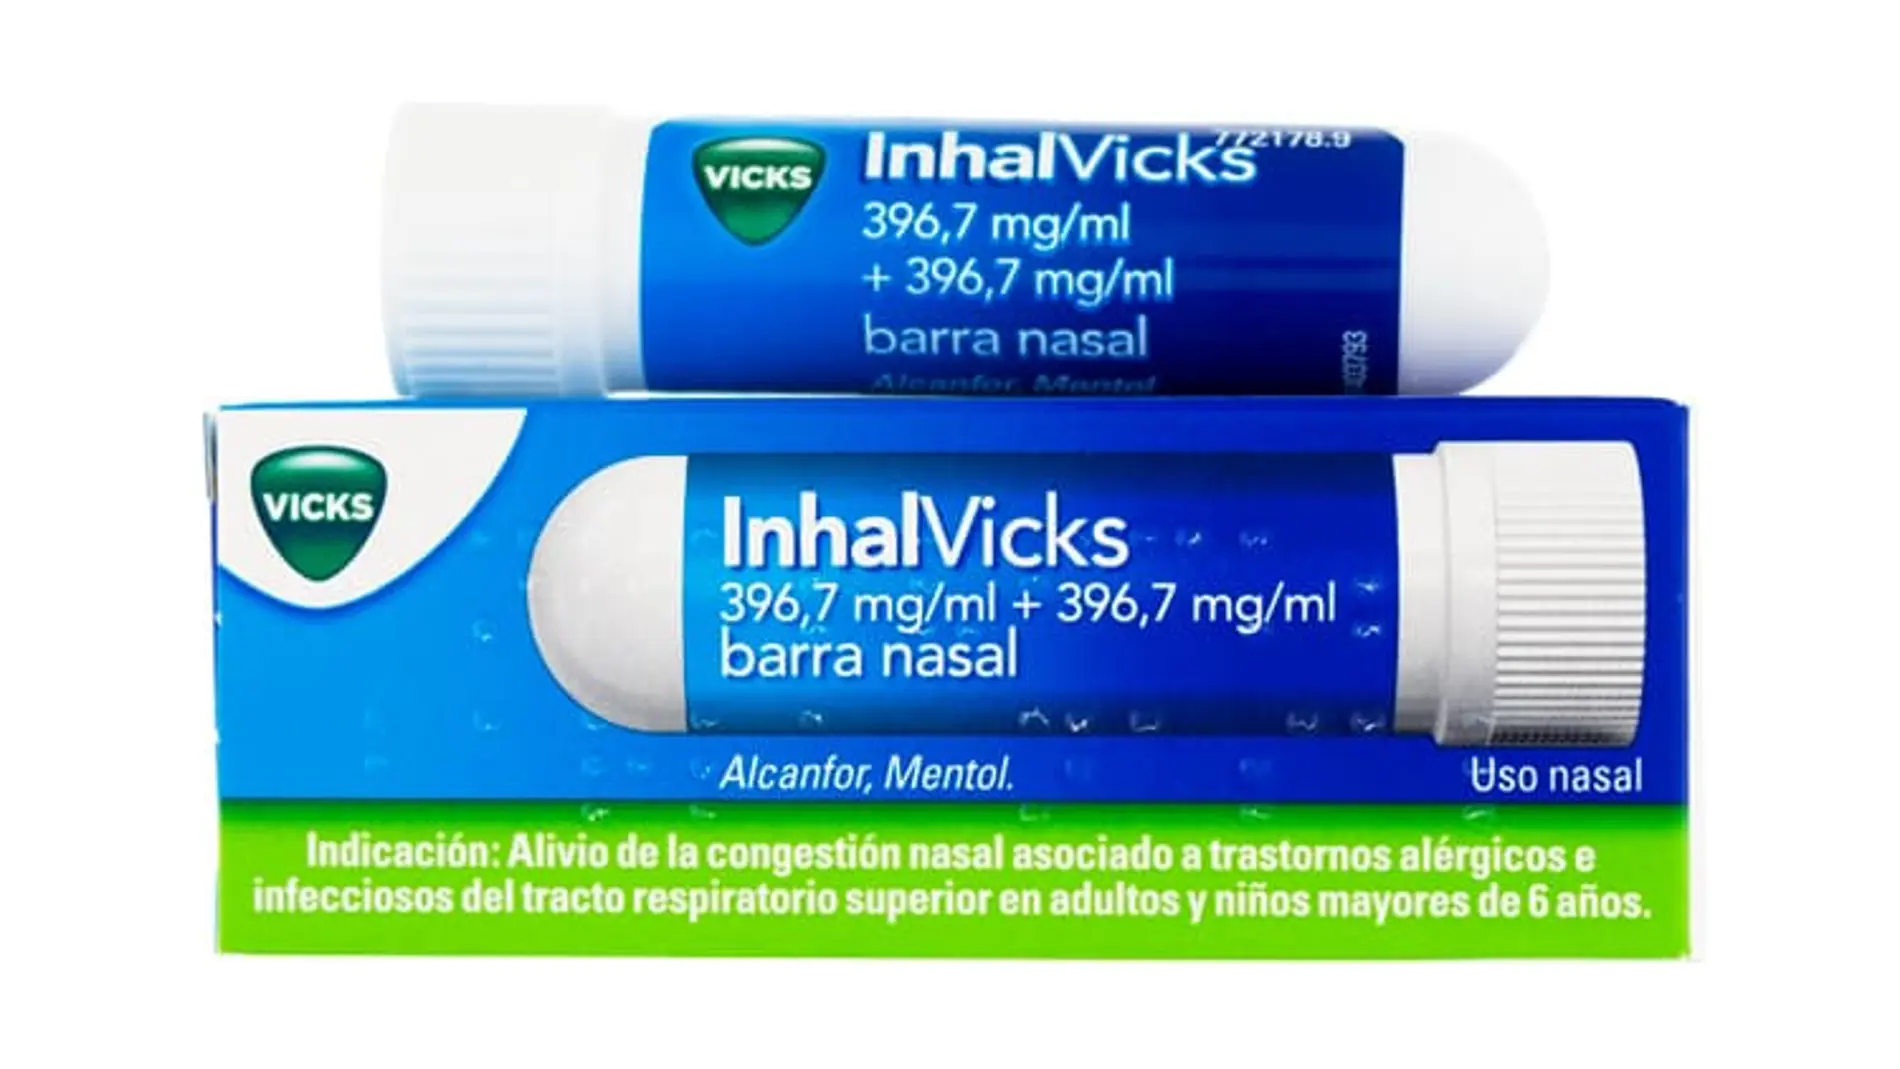 Inhalvicks, un inhalador para la congestión nasal del laboratorio Vicks